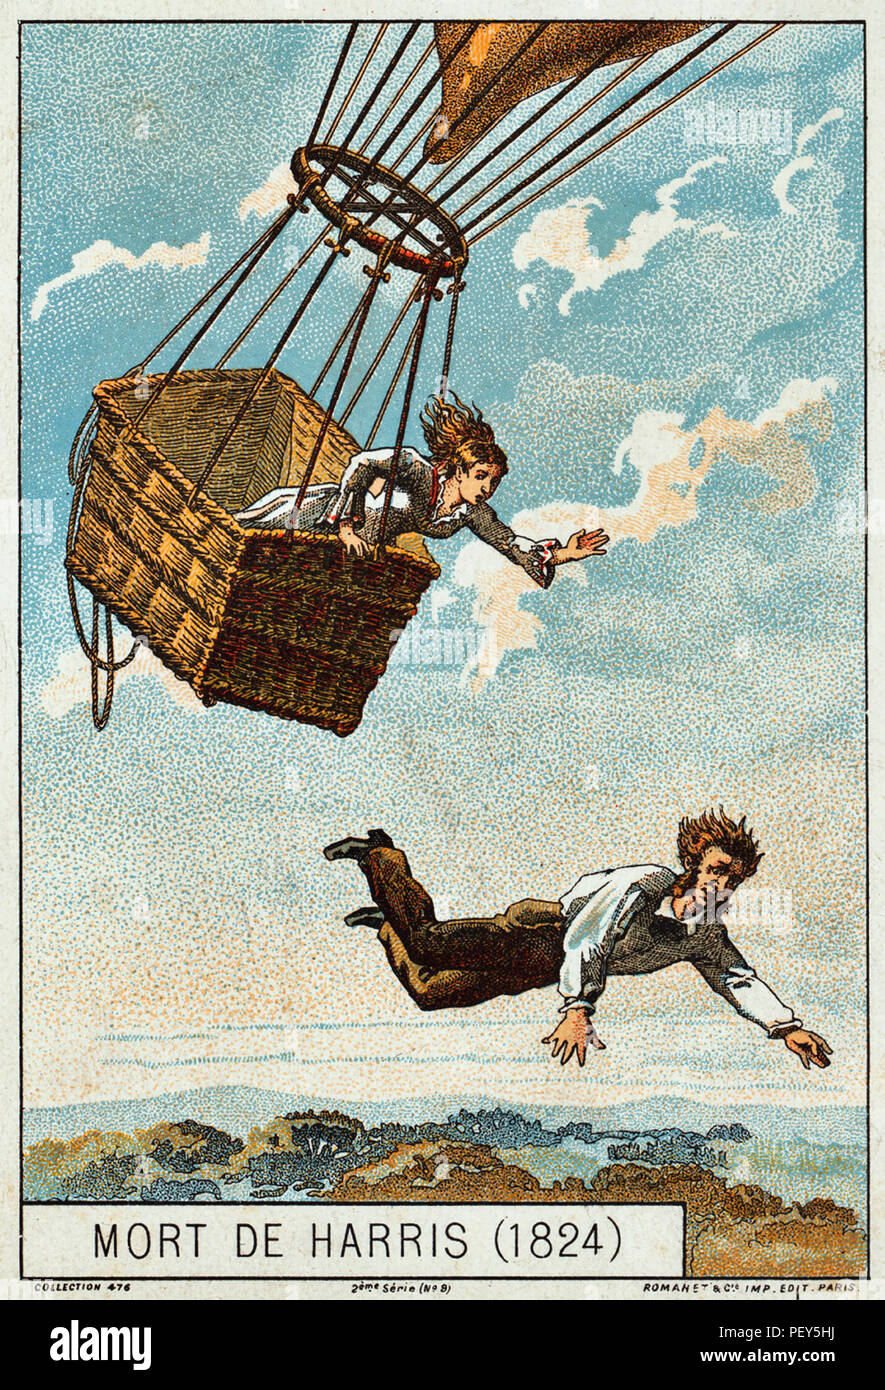 THOMAS HARRIS (?-1824) Englisch Ballonfahrer stirbt während des Fluges der Ballon Royal George vom 25. Mai 1824 Von Vauxhall, London. Tatsächlich war er im Crash, begleitet von Sophia Bestände, die überlebt haben, getötet. Teil einer französischen Sammlung card Serie veröffentlicht 1890-1900 Stockfoto